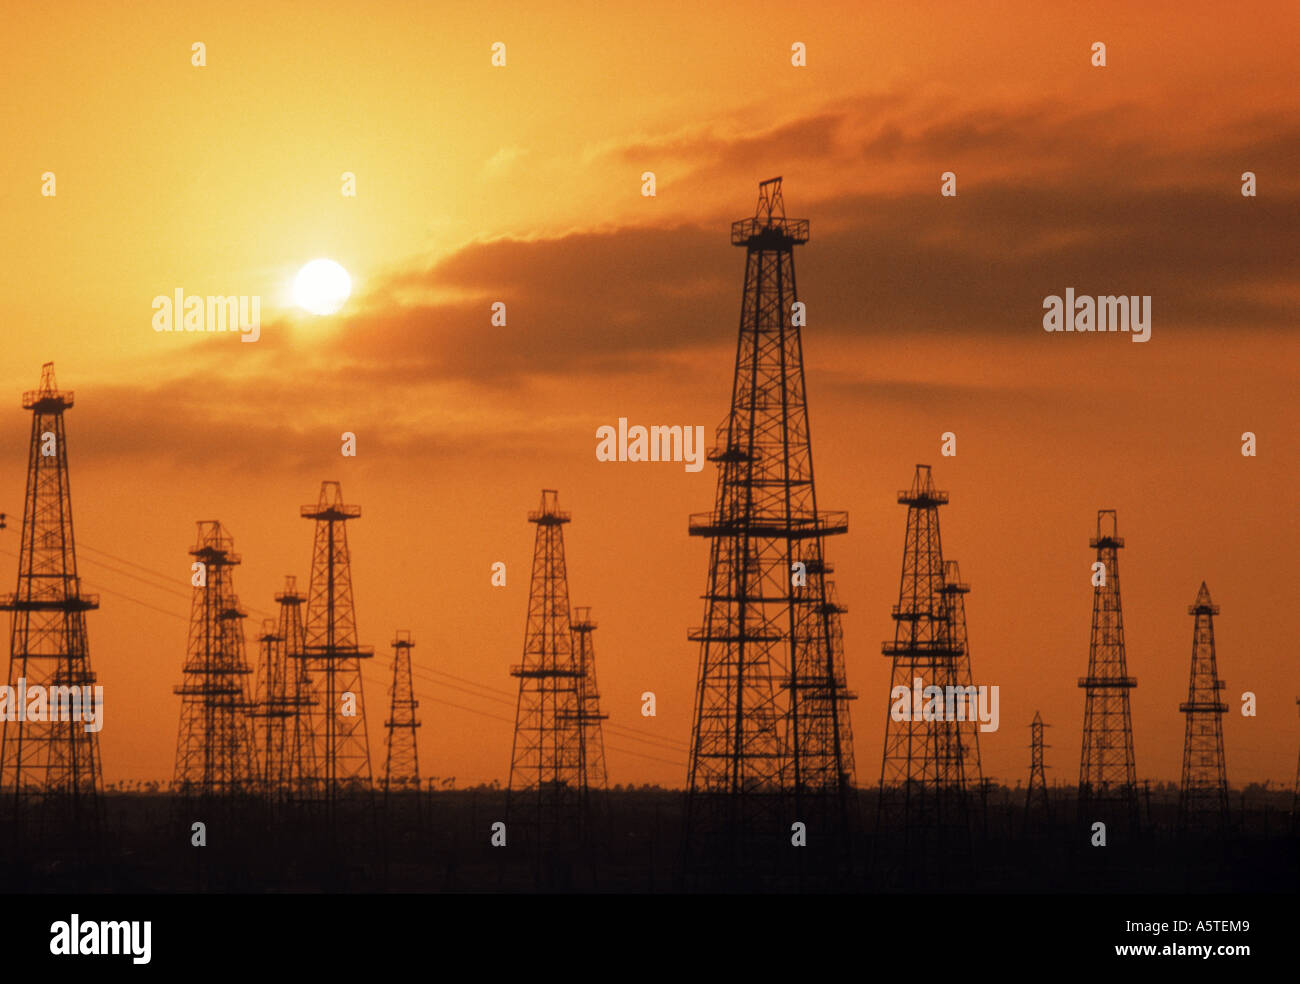 Öl-Bohrtürme Silhouette gegen Sonnenuntergang Himmel Stockfoto